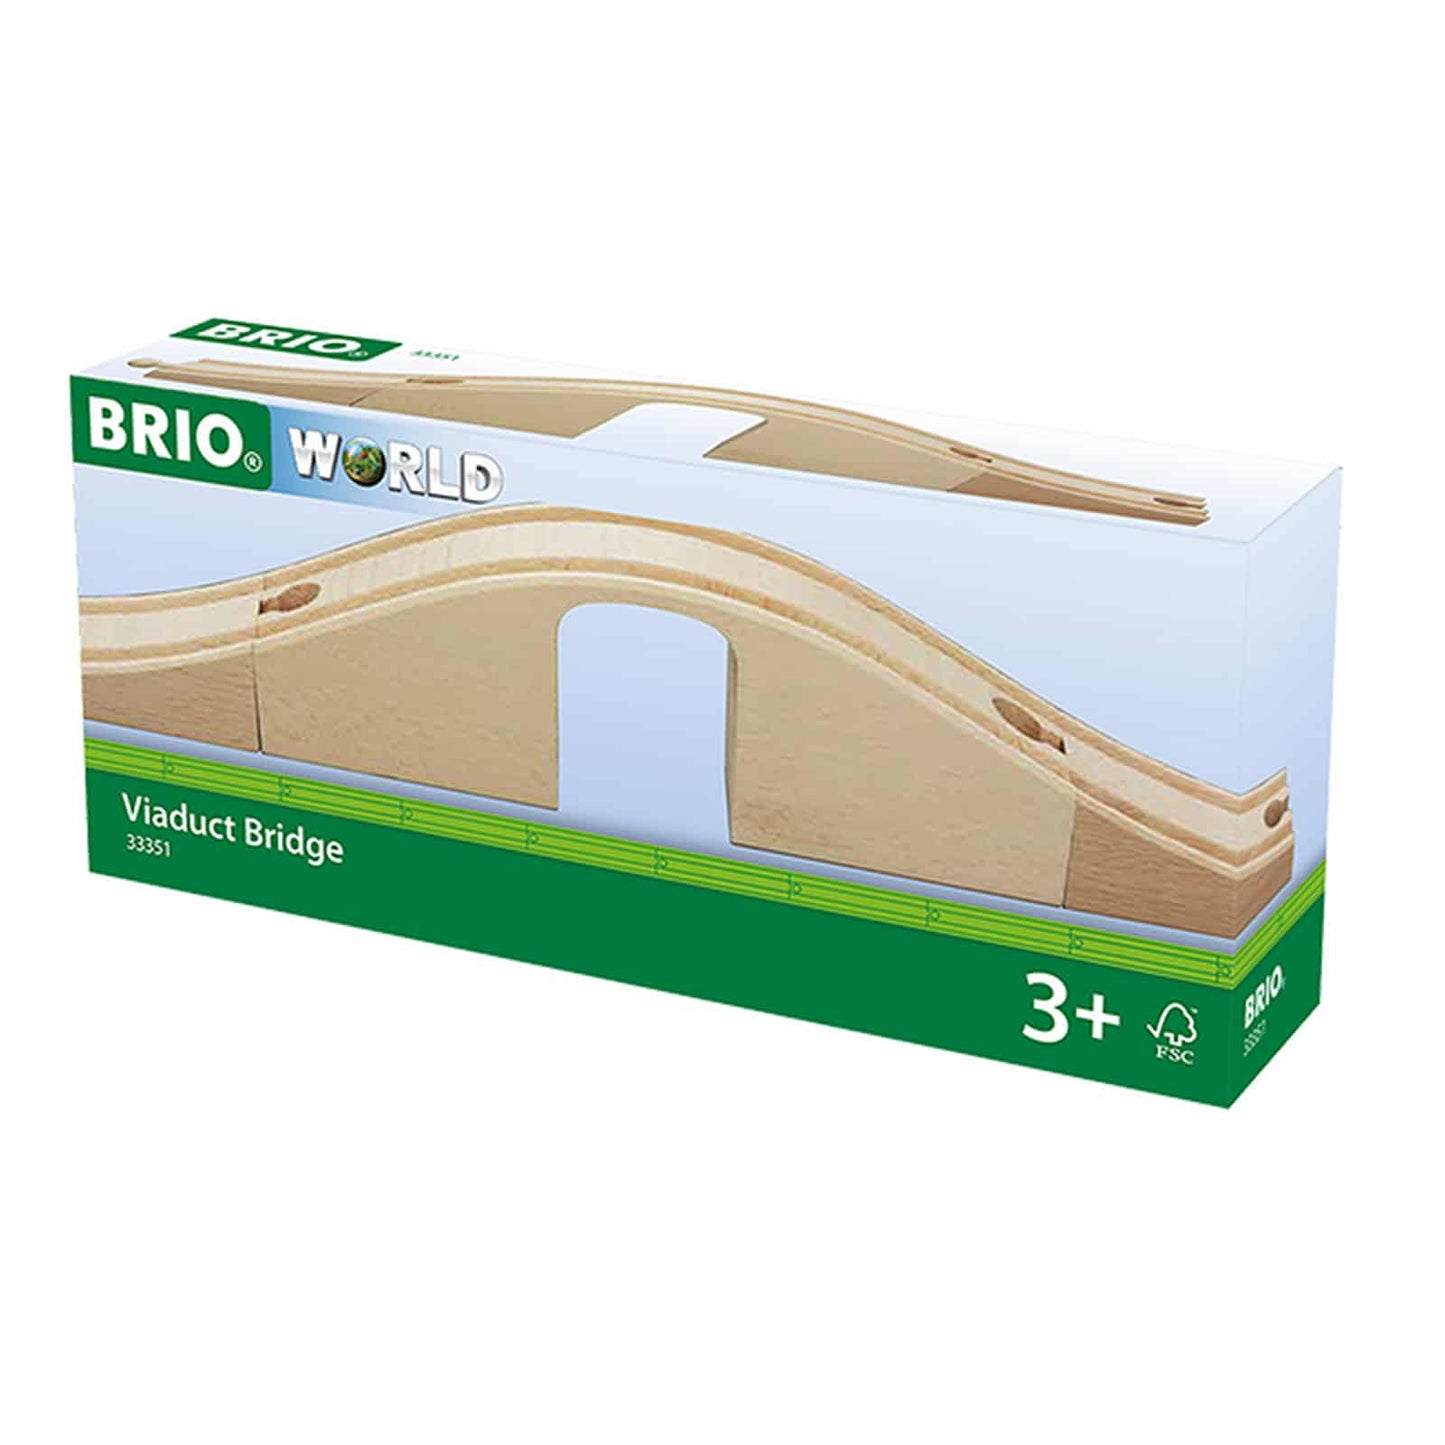 Brio Viaduct Bridge